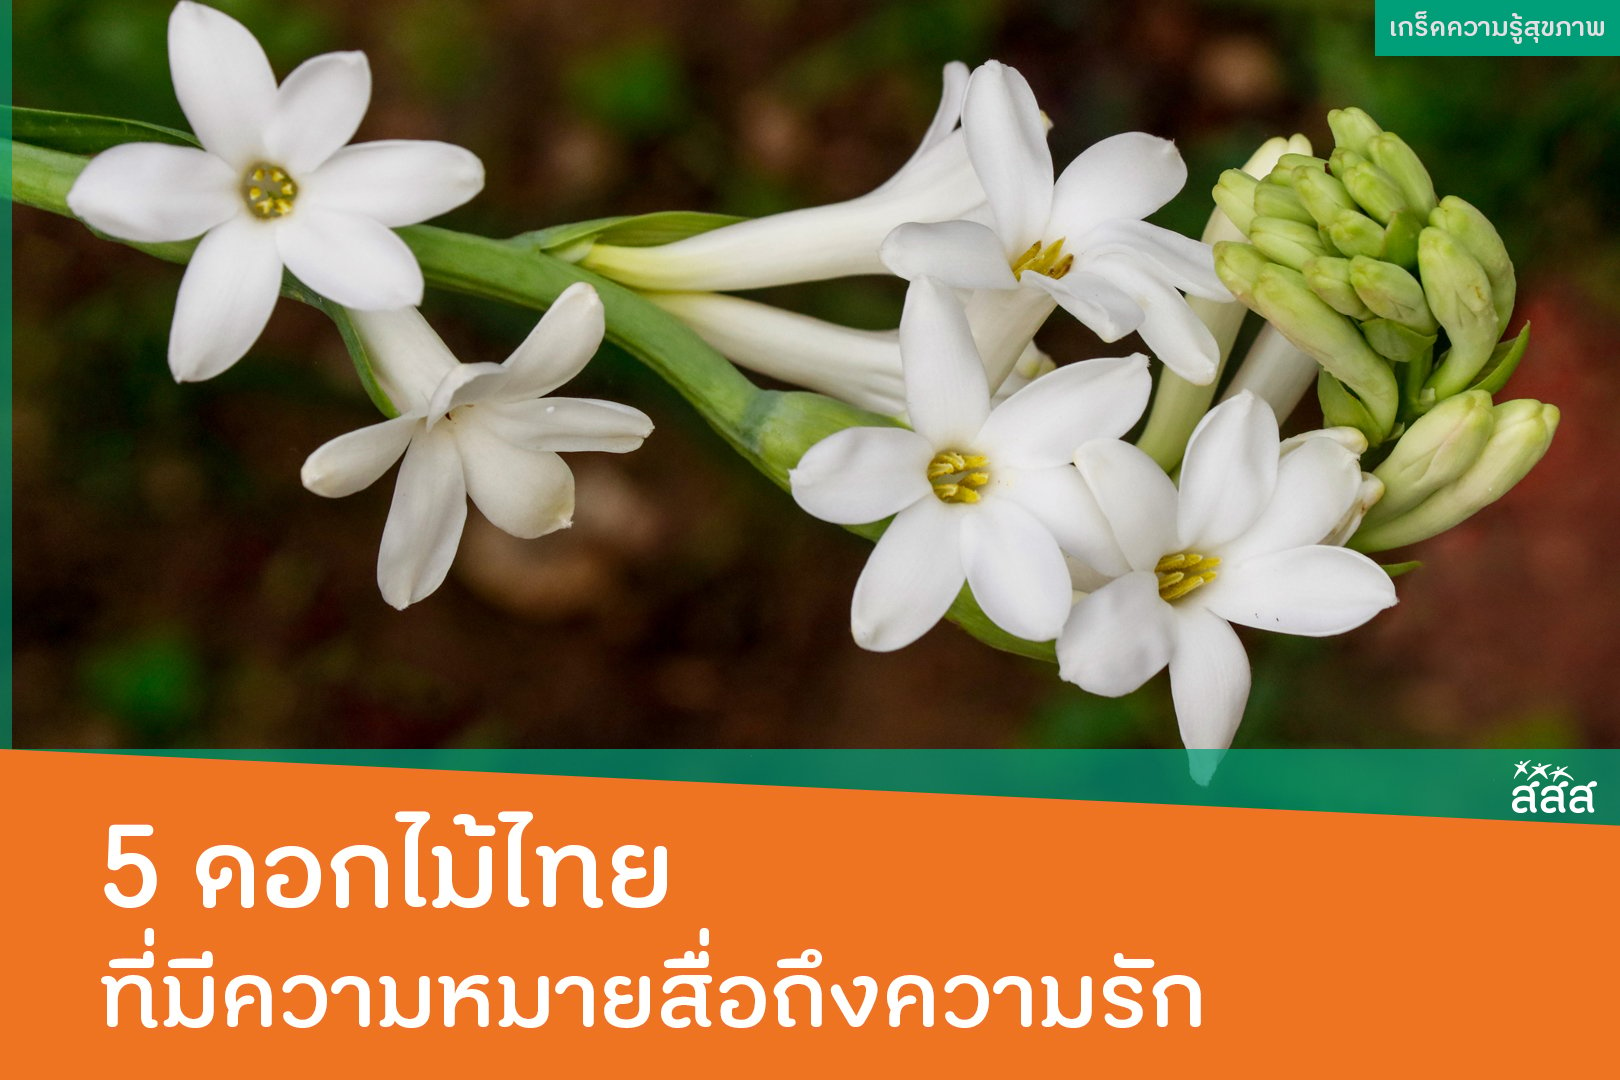 5 ดอกไม้ไทย ที่มีความหมายสื่อถึงความรัก -  สำนักงานกองทุนสนับสนุนการสร้างเสริมสุขภาพ (สสส.)